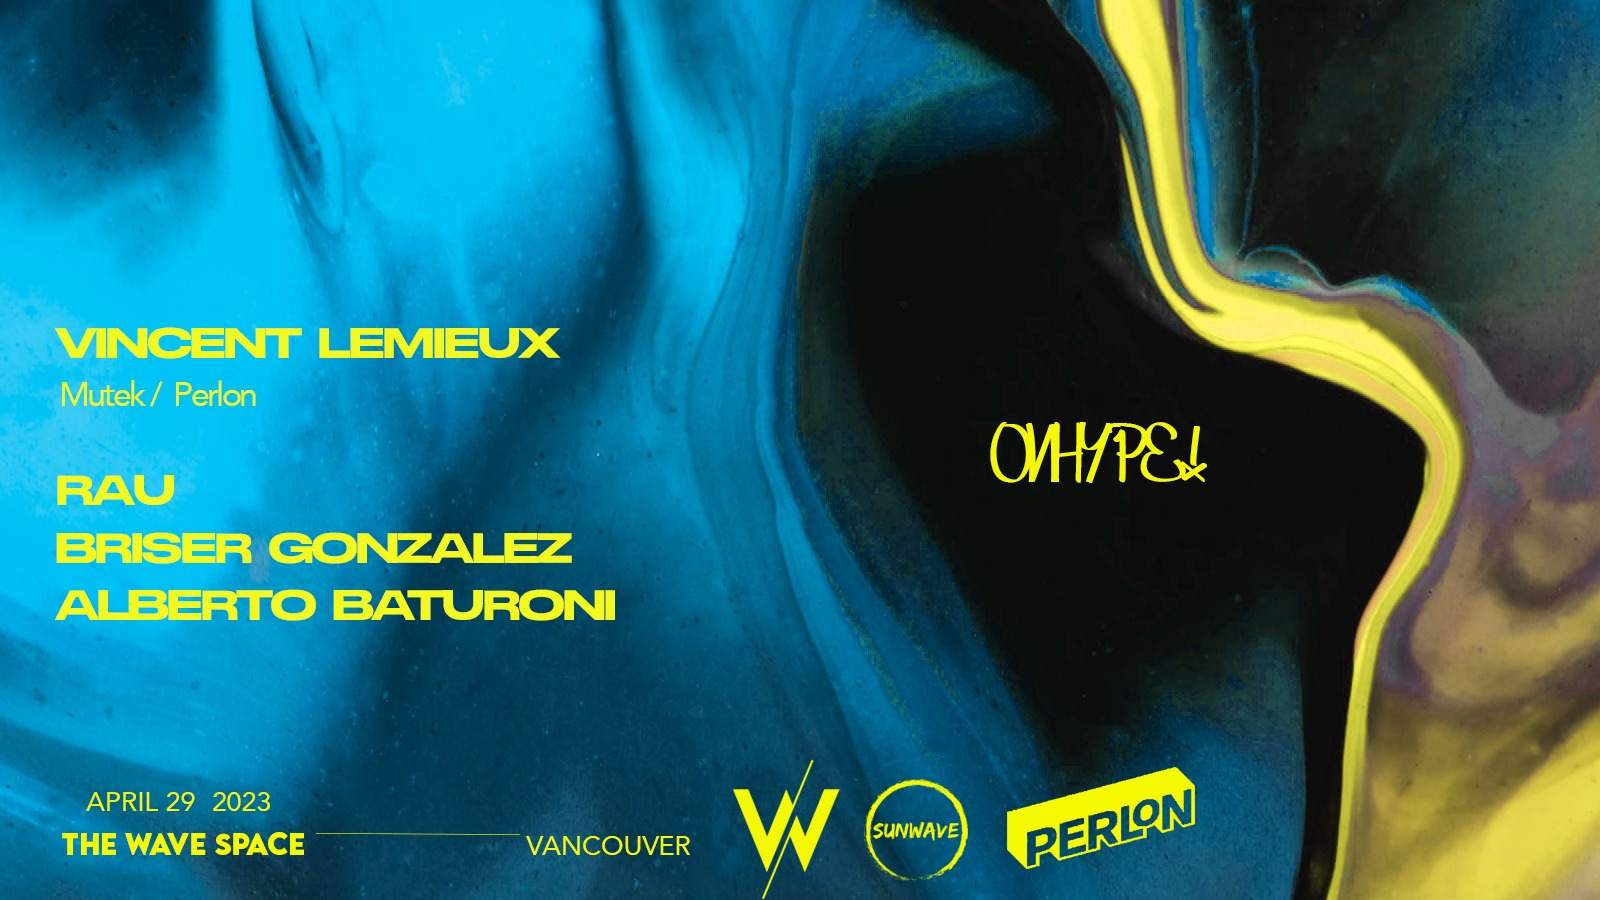 OnHype! X Sunwave presents: Vincent Lemieux - Página frontal